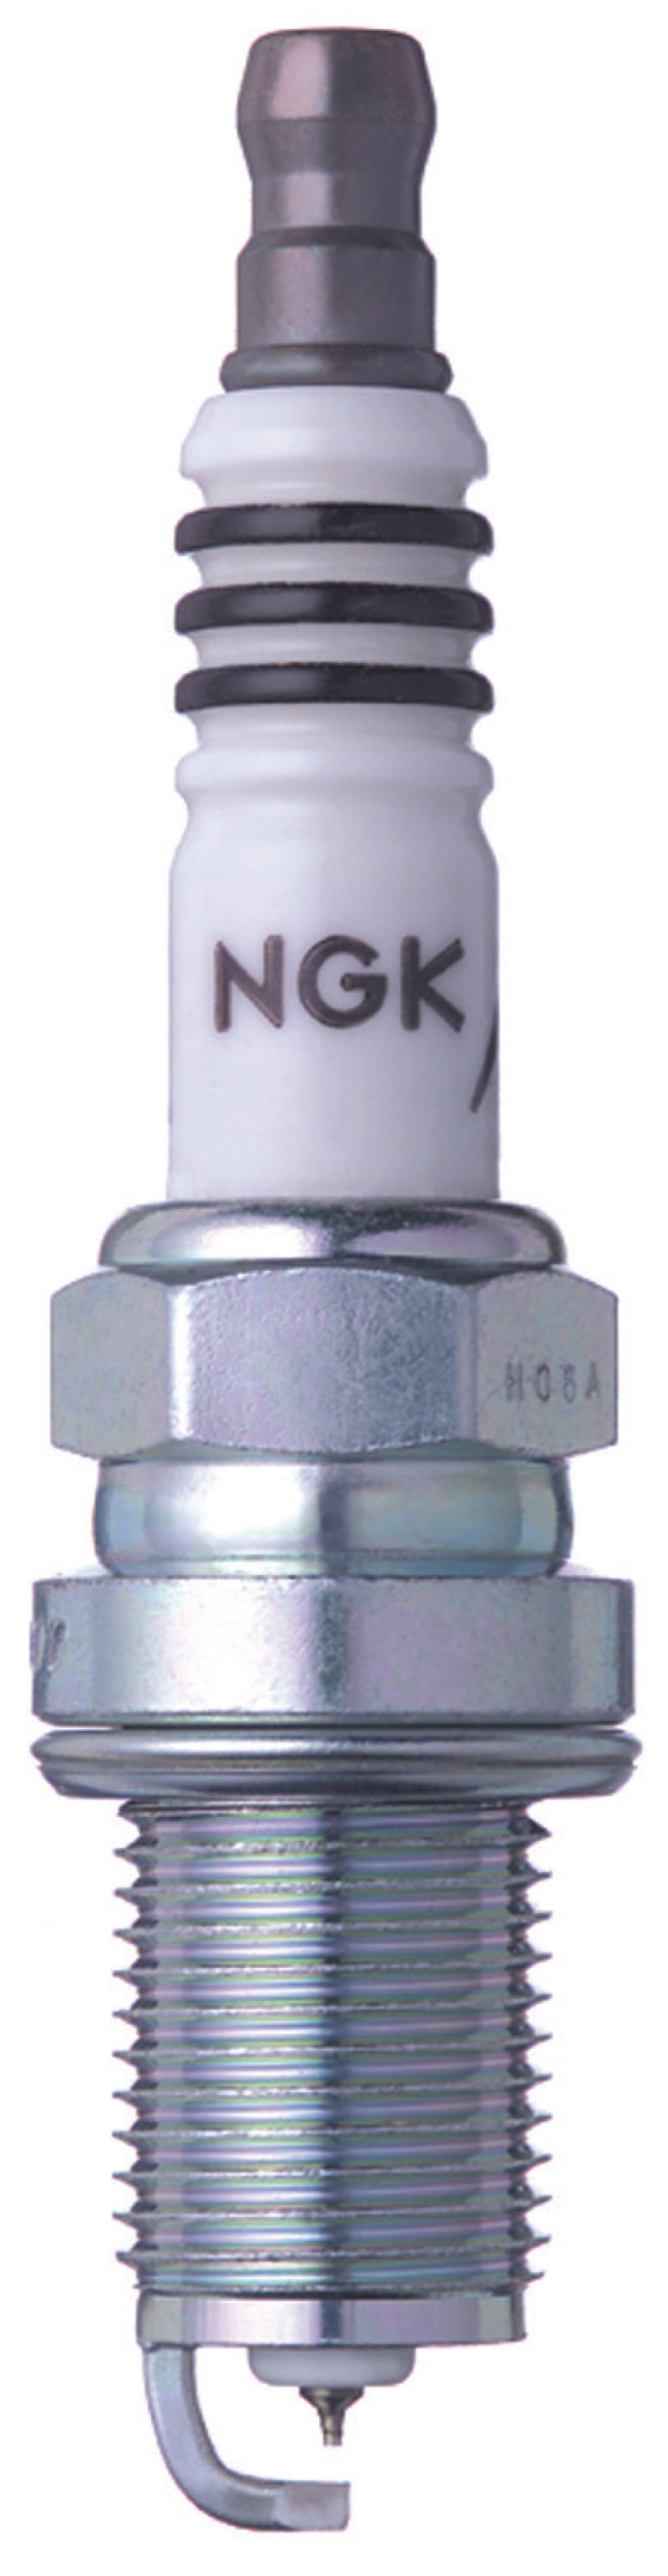 NGK Iridium Spark Plugs Box of 4 (BKR7EIX).